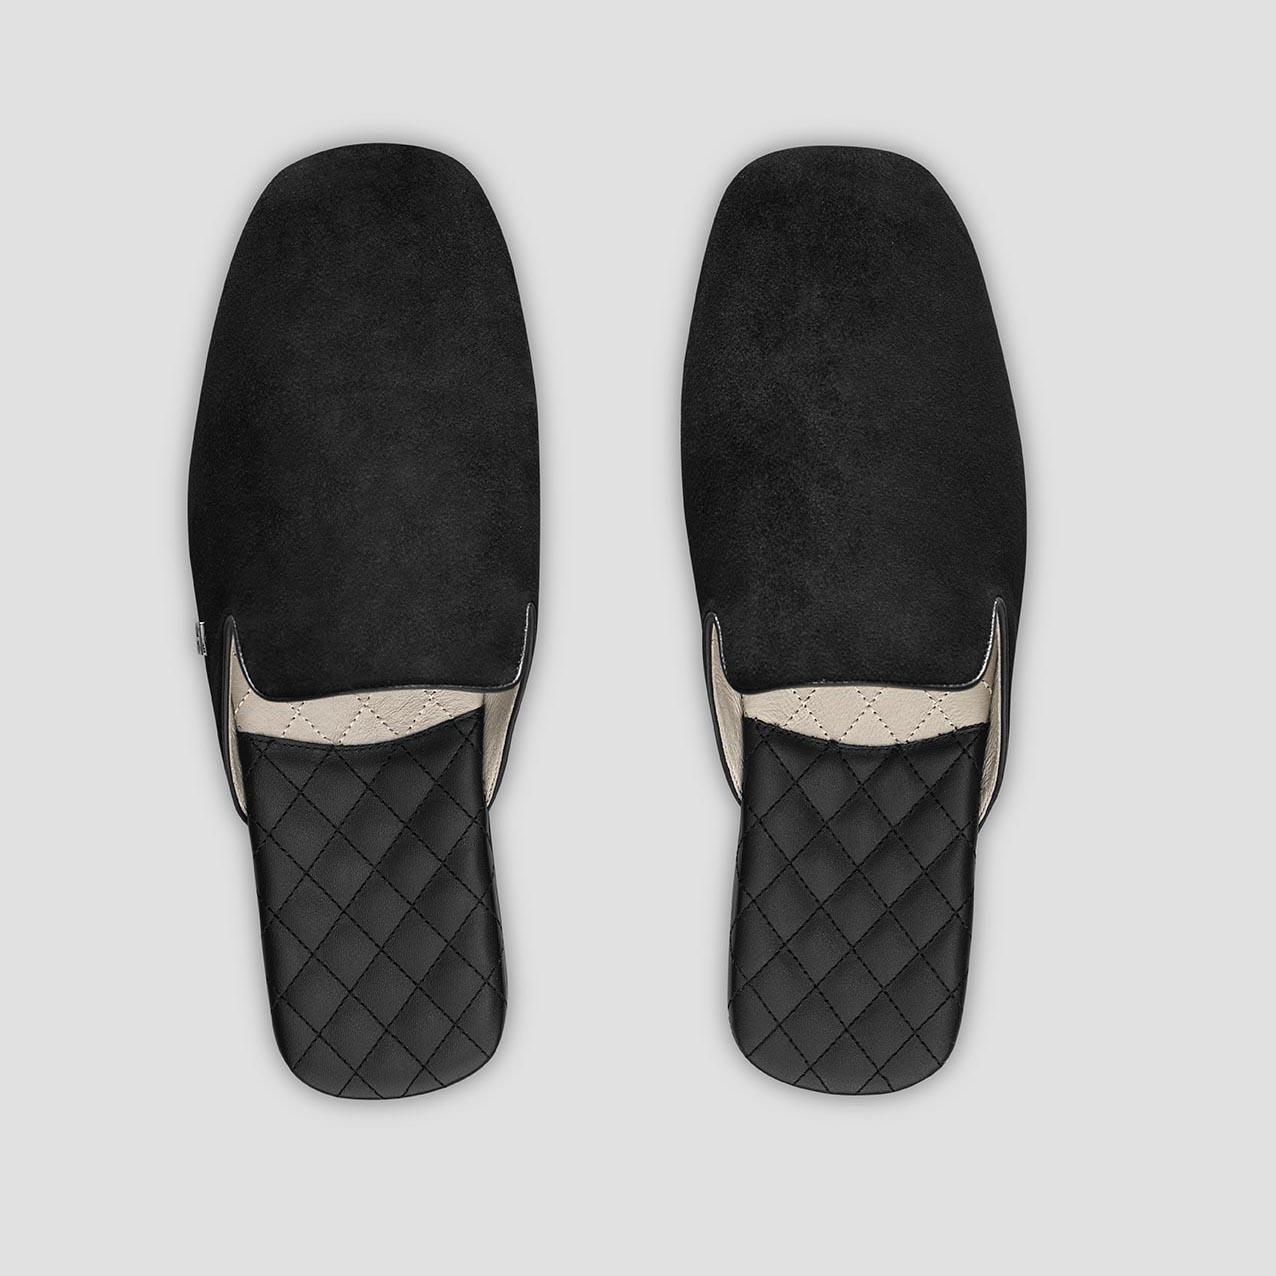 Тапочки Togas Реон черные мужские кожаные, размер 44-45 тапочки togas оливер мужские черные р 46 47